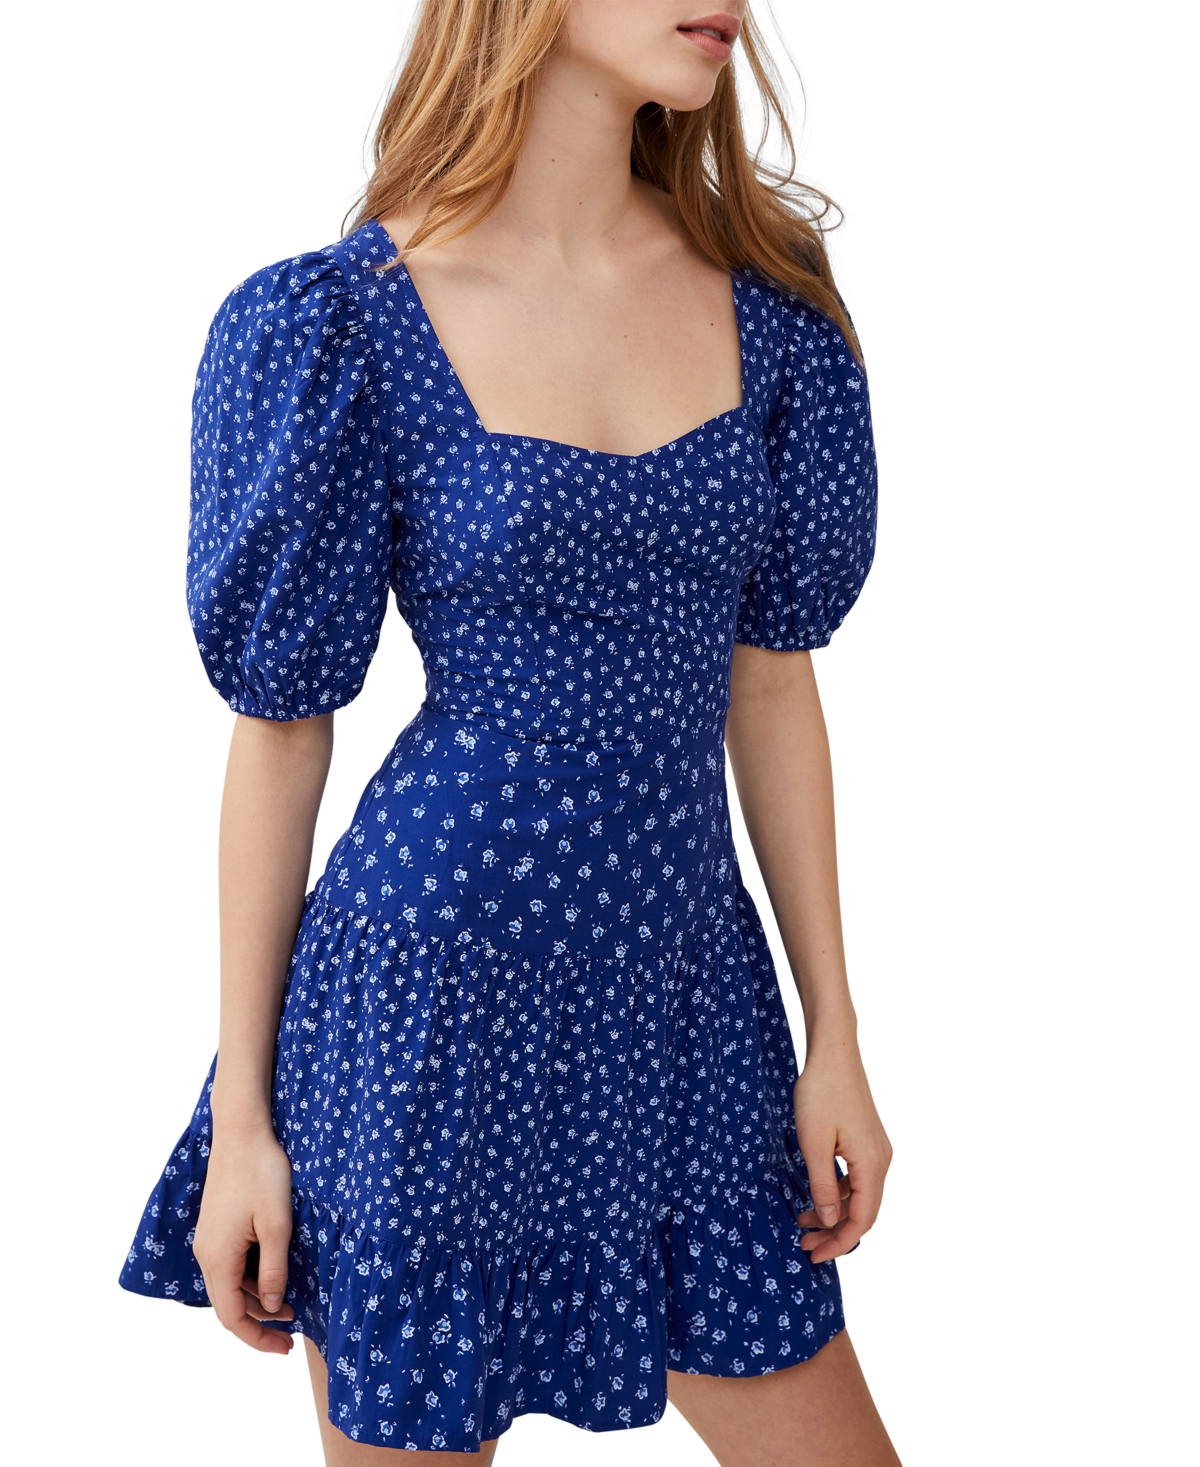 Women's Printed Puff-Sleeve A-Line Dress - Cobalt